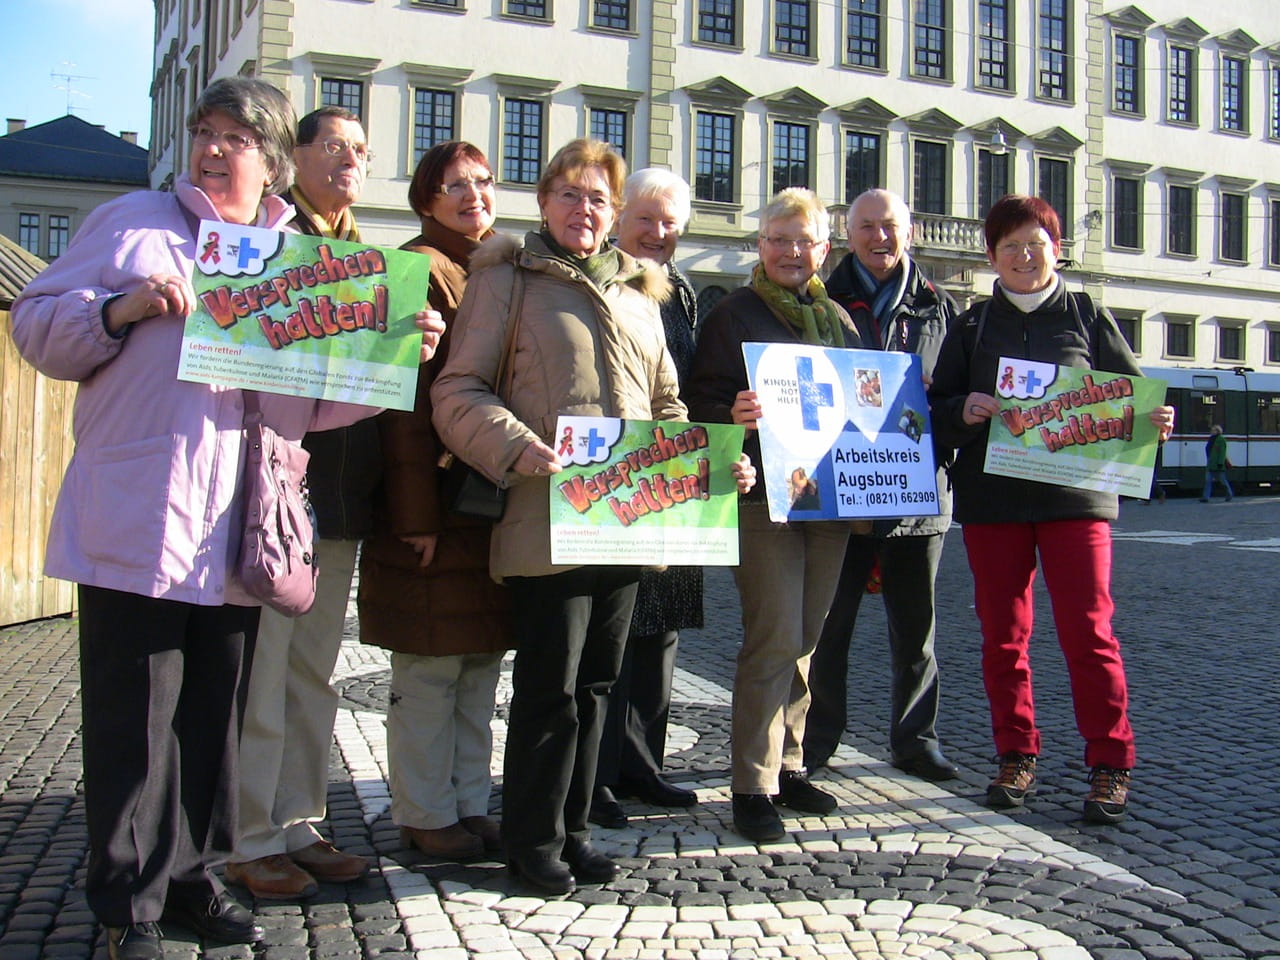 Gruppenfoto des Arbeitskreises Augsburg auf einem Aktionstags